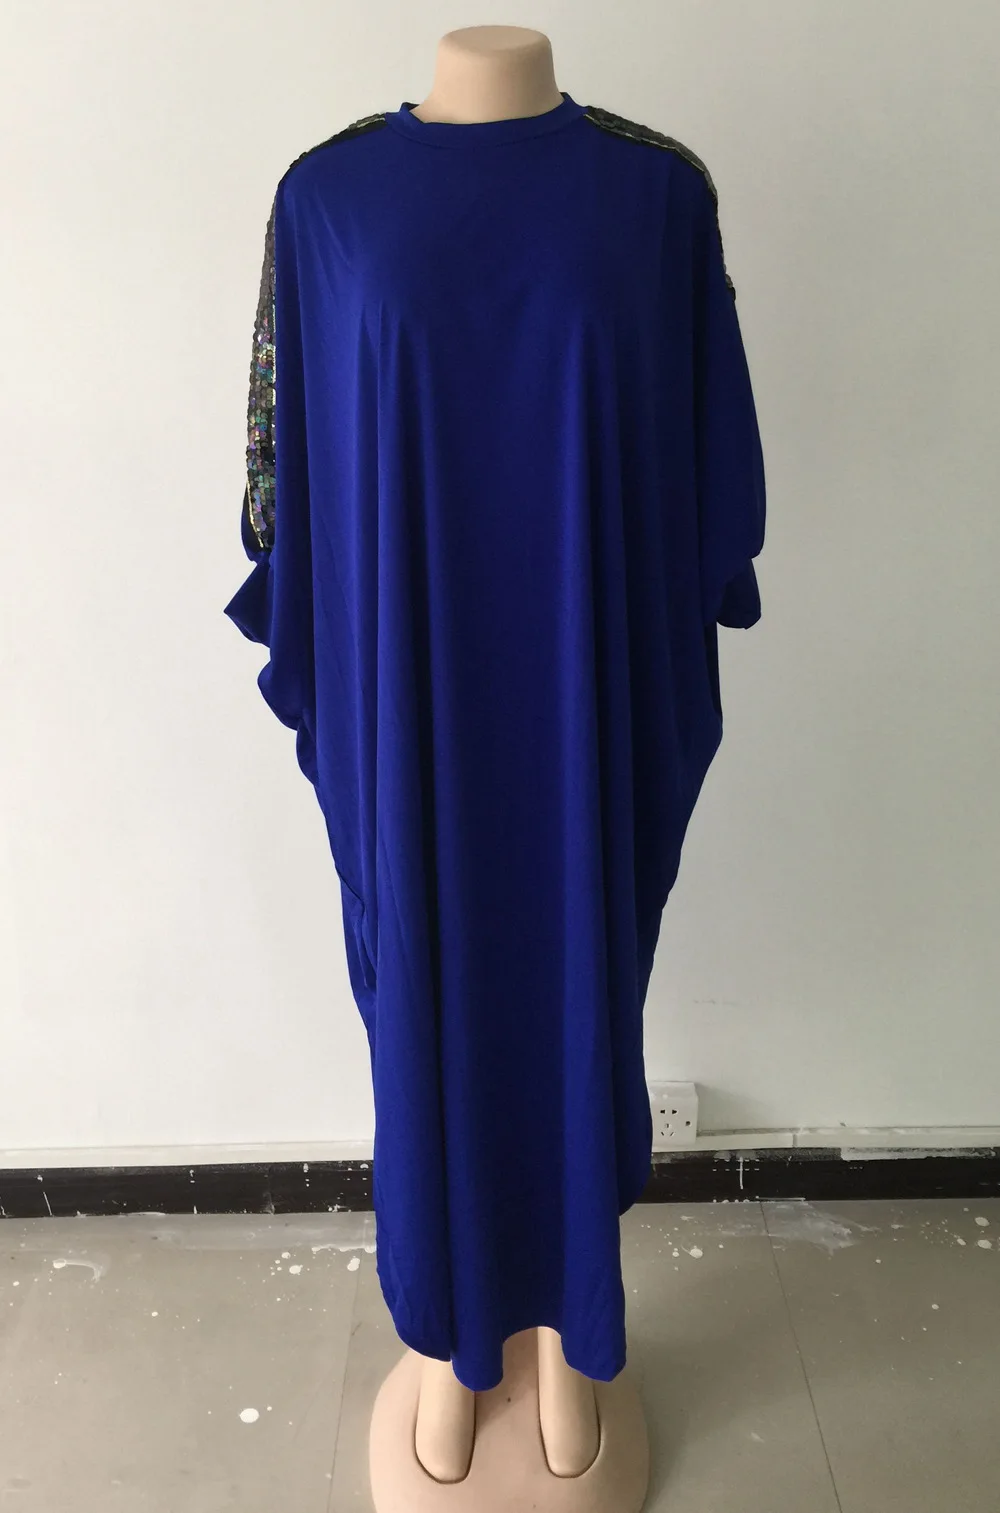 Исламское женское мусульманское платье Дубай Турецкая Малайзия Пакистан марокканский кафтан с блестками Халат красный синий черный абайя - Цвет: Blue Dress